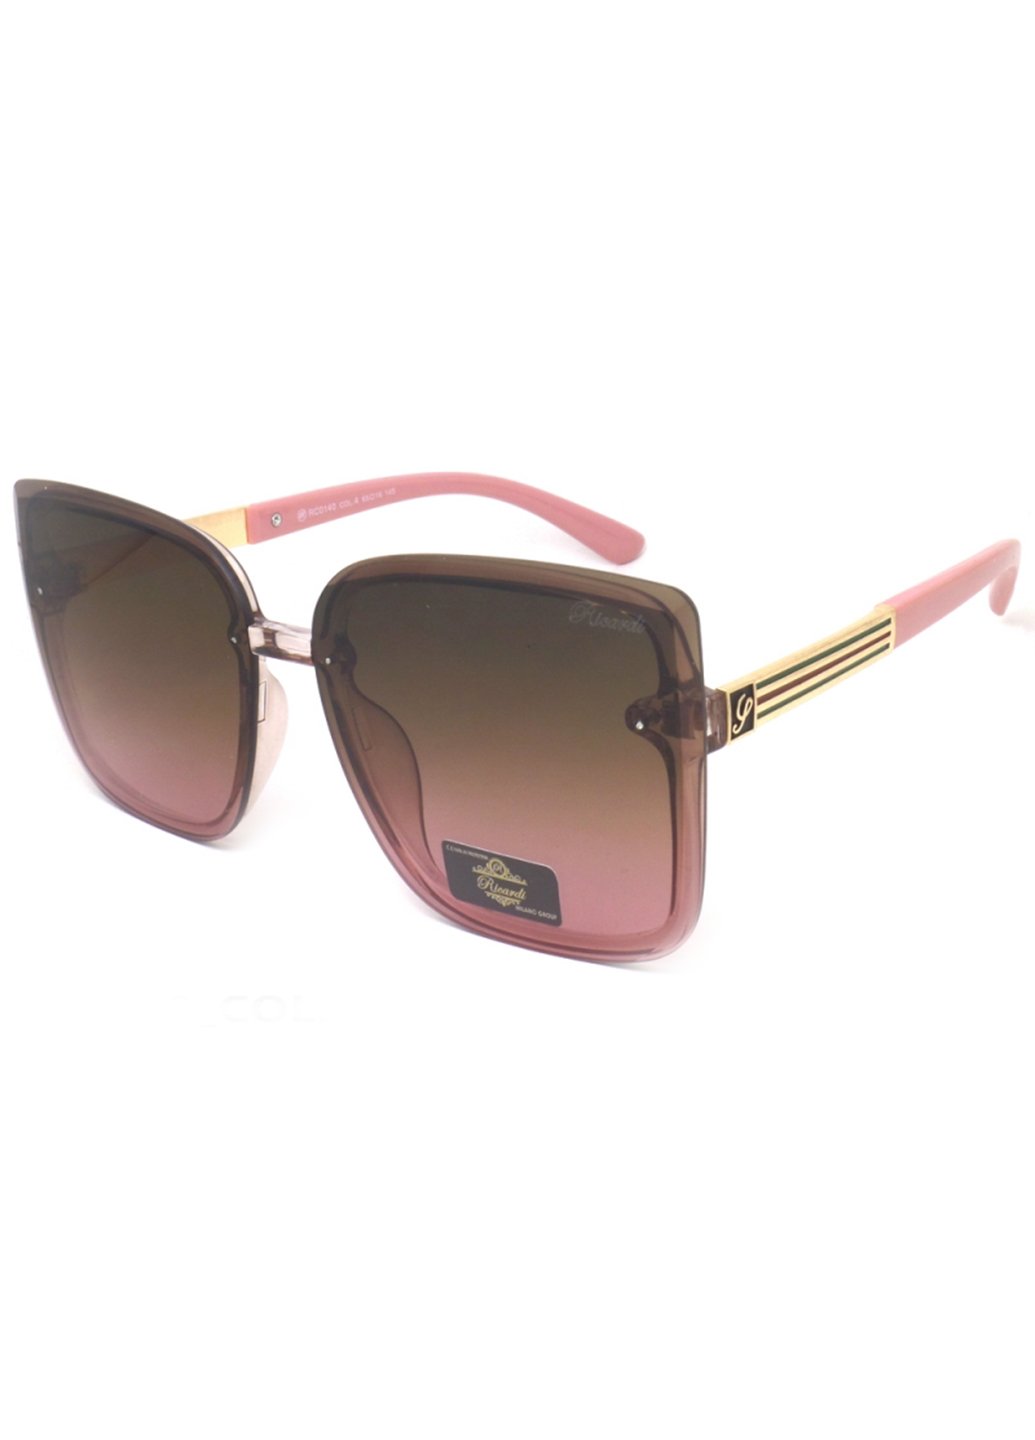 Купить Женские солнцезащитные очки Ricardi RC0140 110013 - Коричневый в интернет-магазине